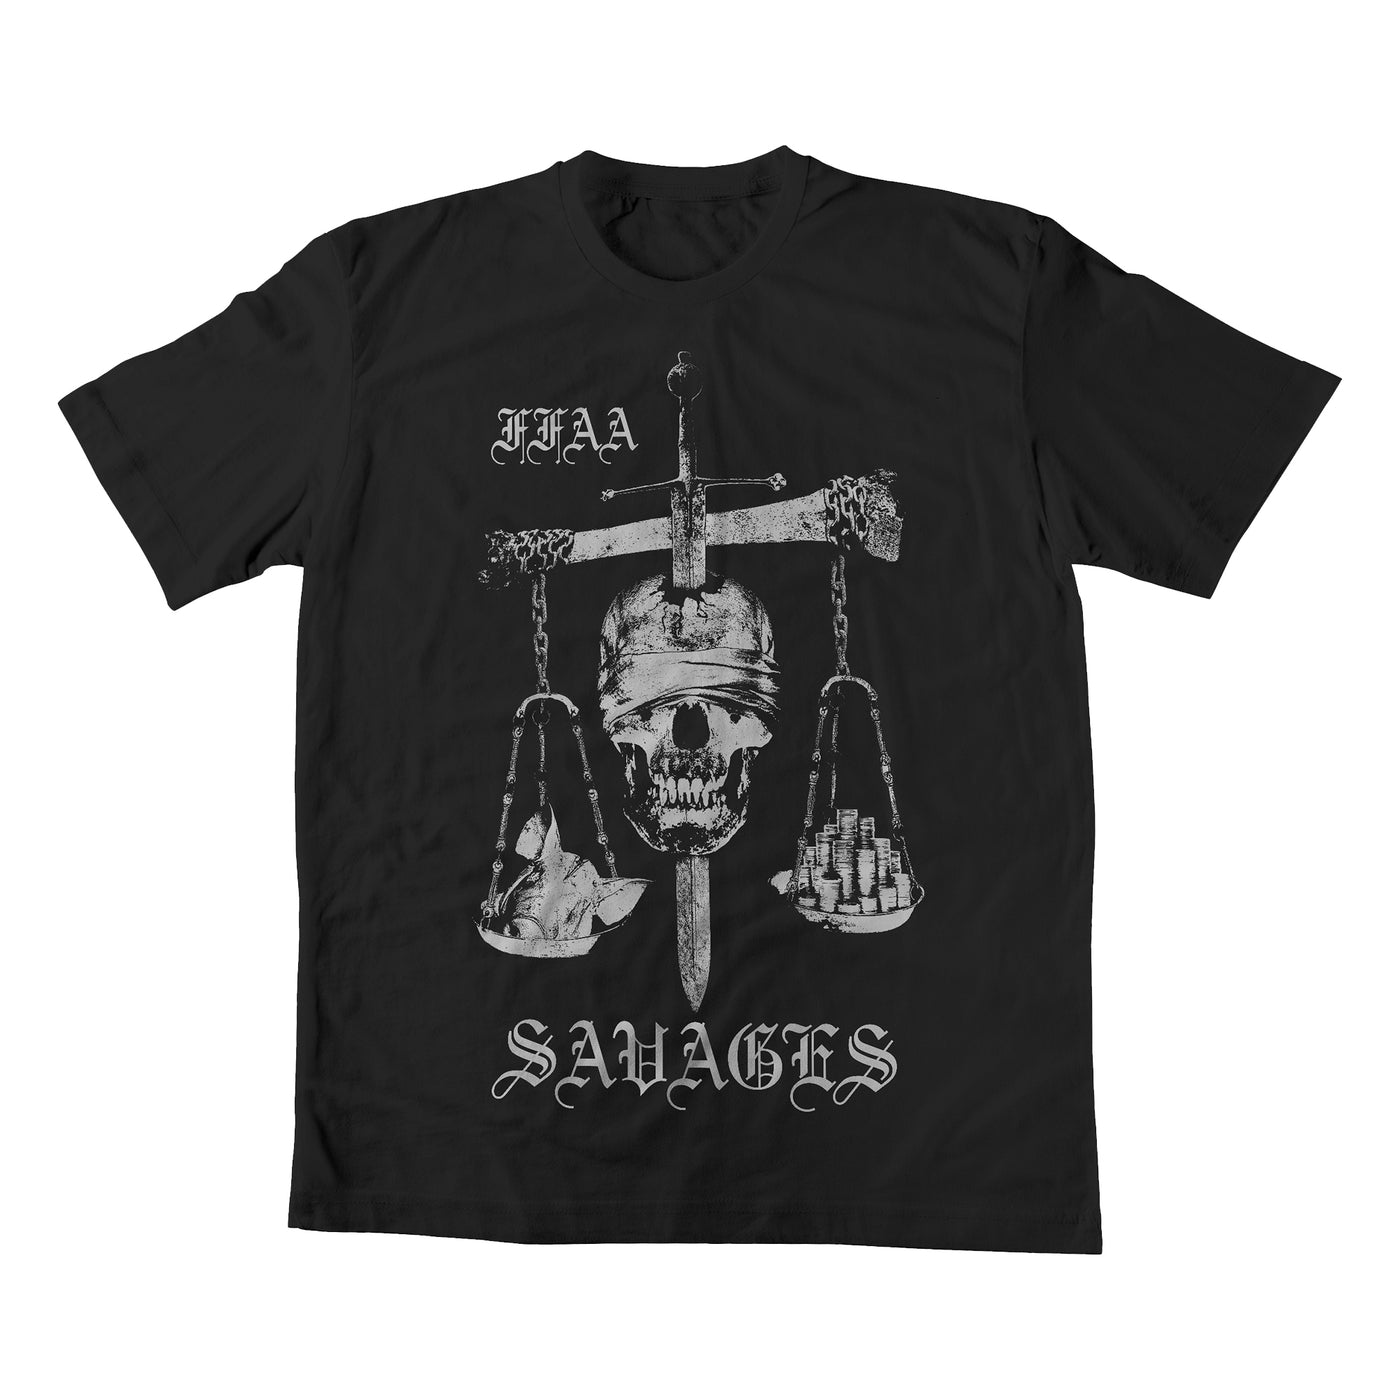 Savages Shirt